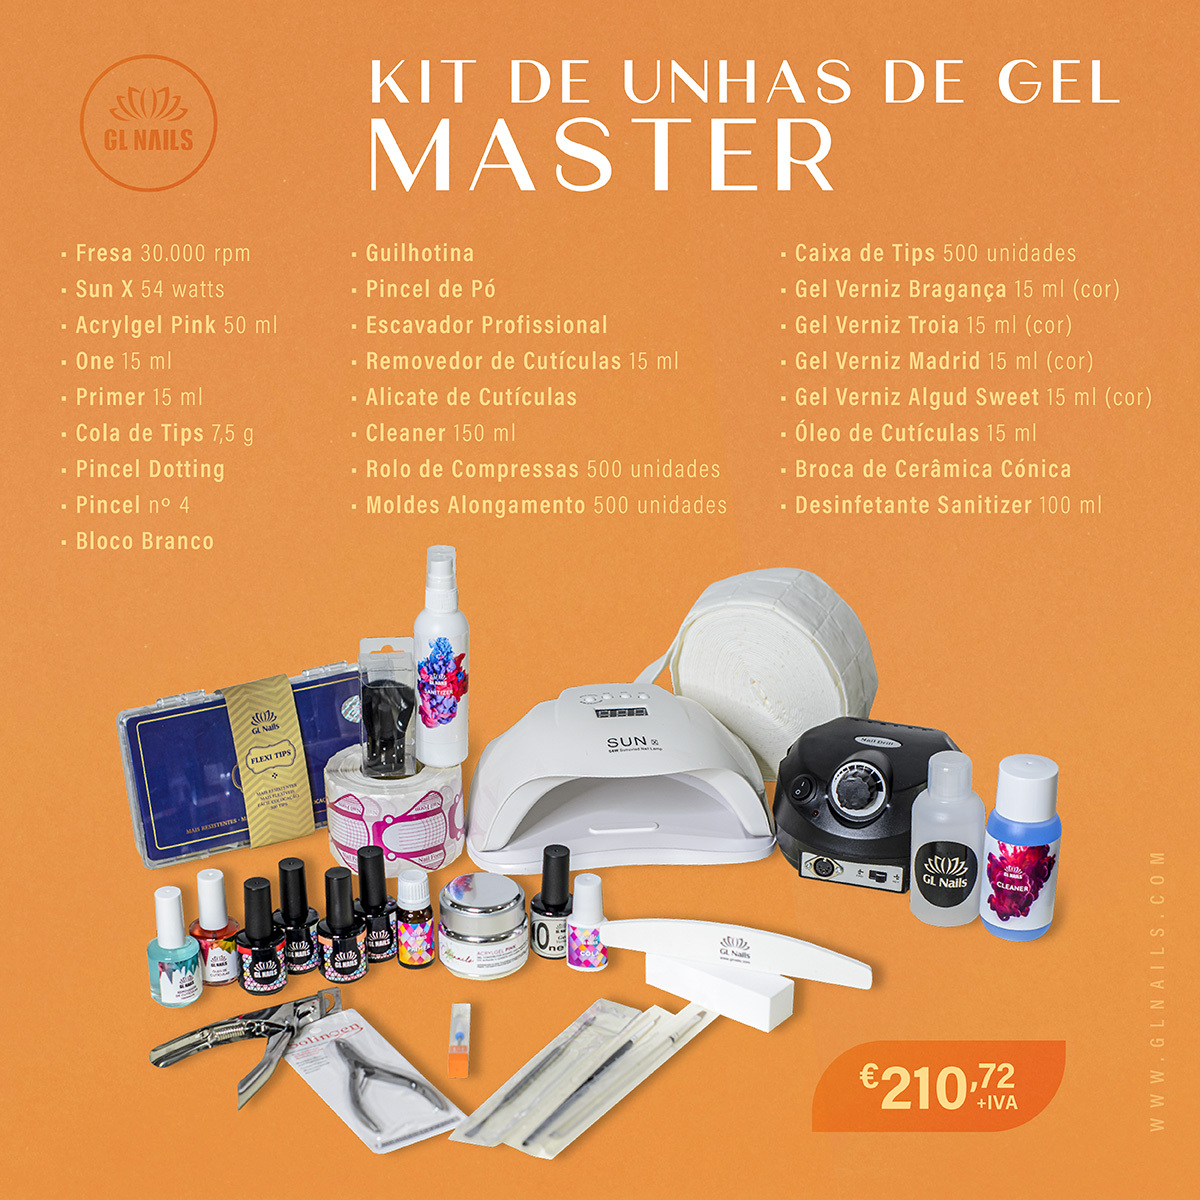 Kit de Unhas de Gel Master